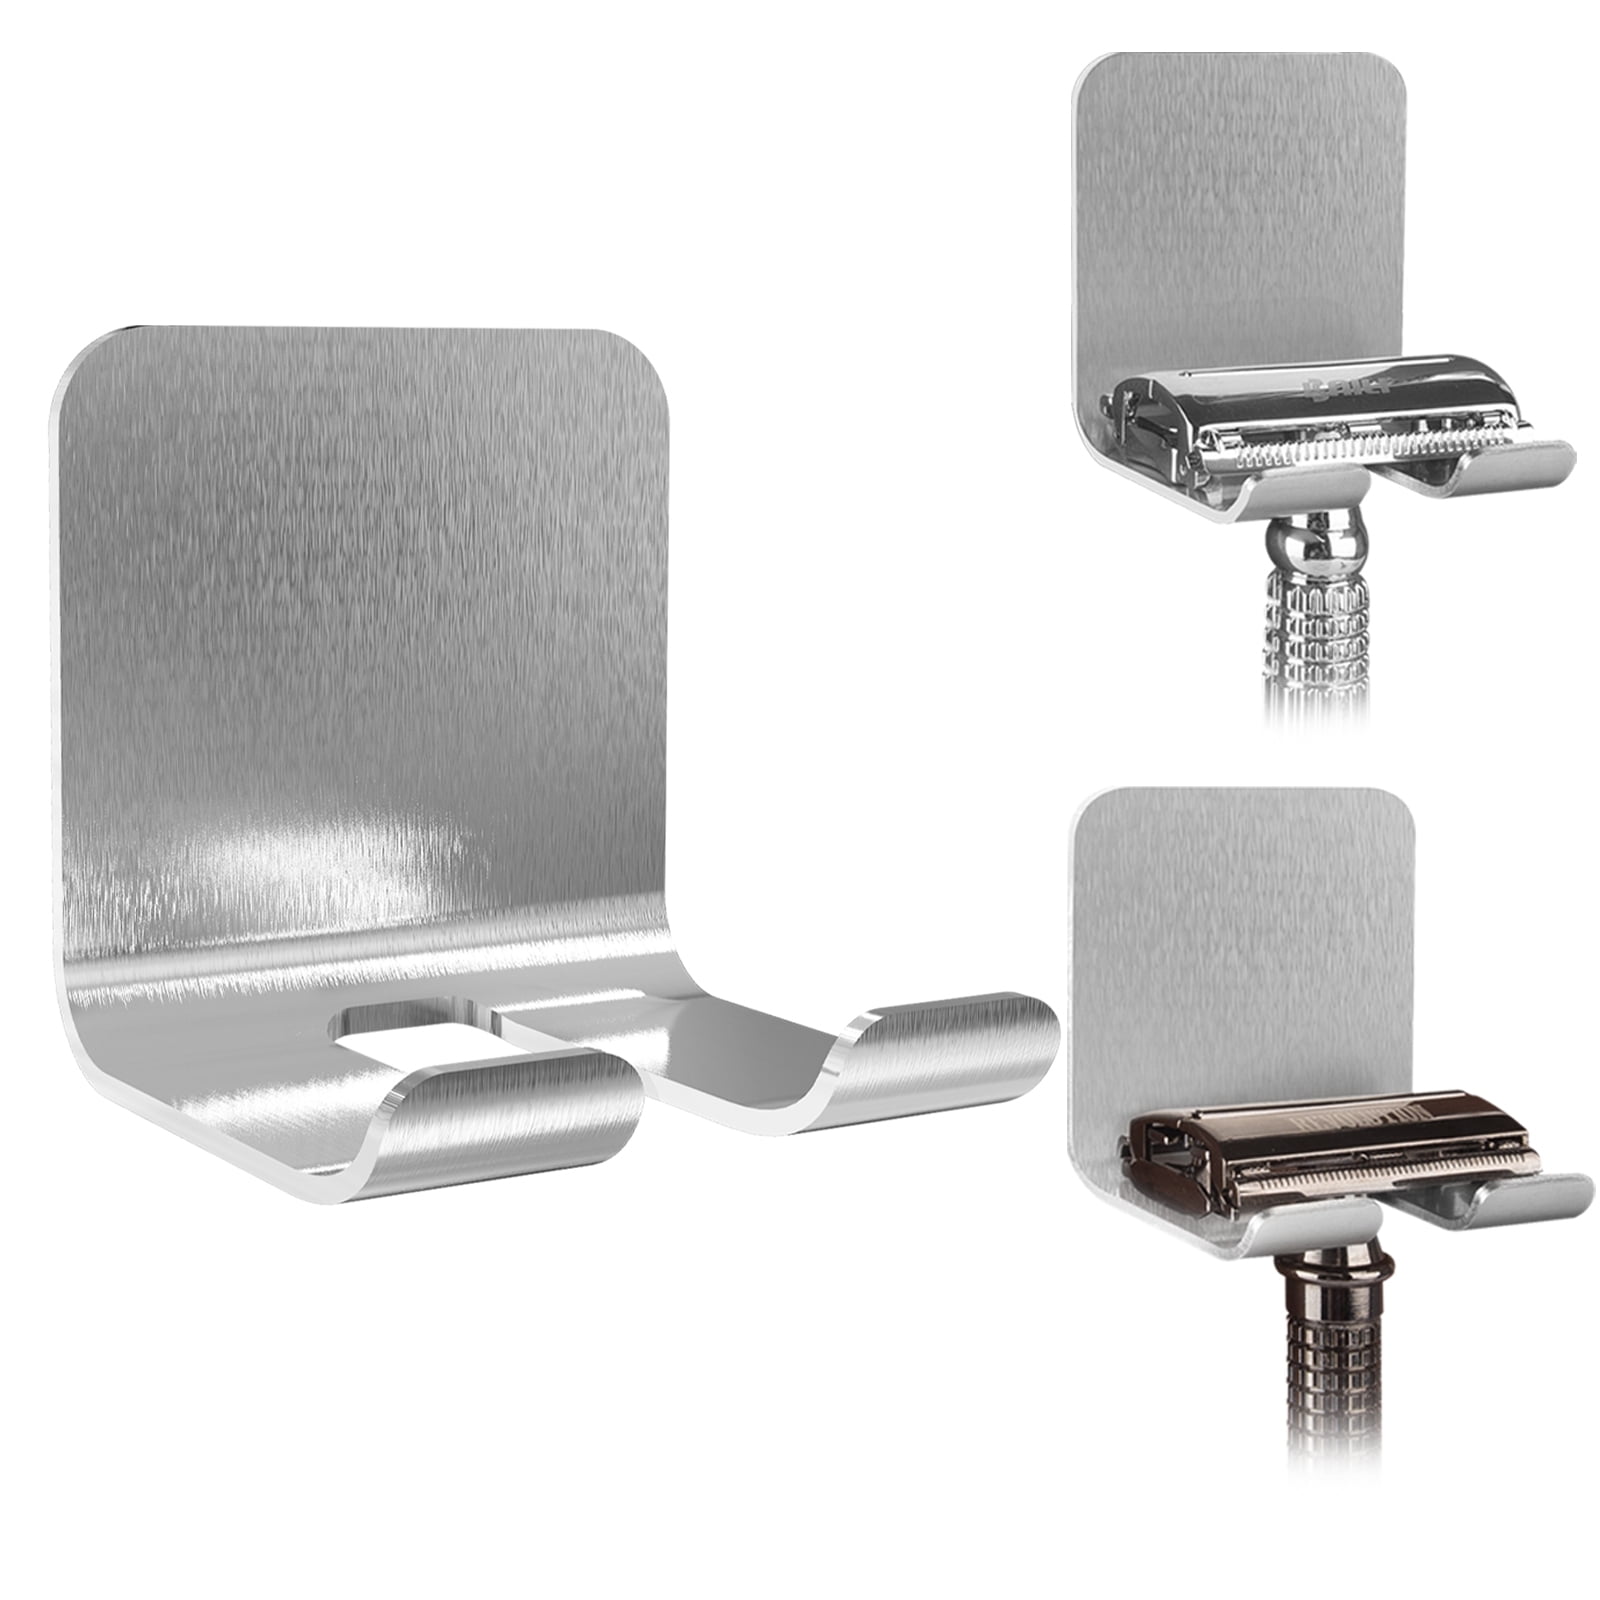 Razor Holder for Shower, Shaver Holder Hanger Wall Adhesive Shower Hooks Stand Stainless Steel Utility Hook Bathroom Kitchen Organizer-4 Packs